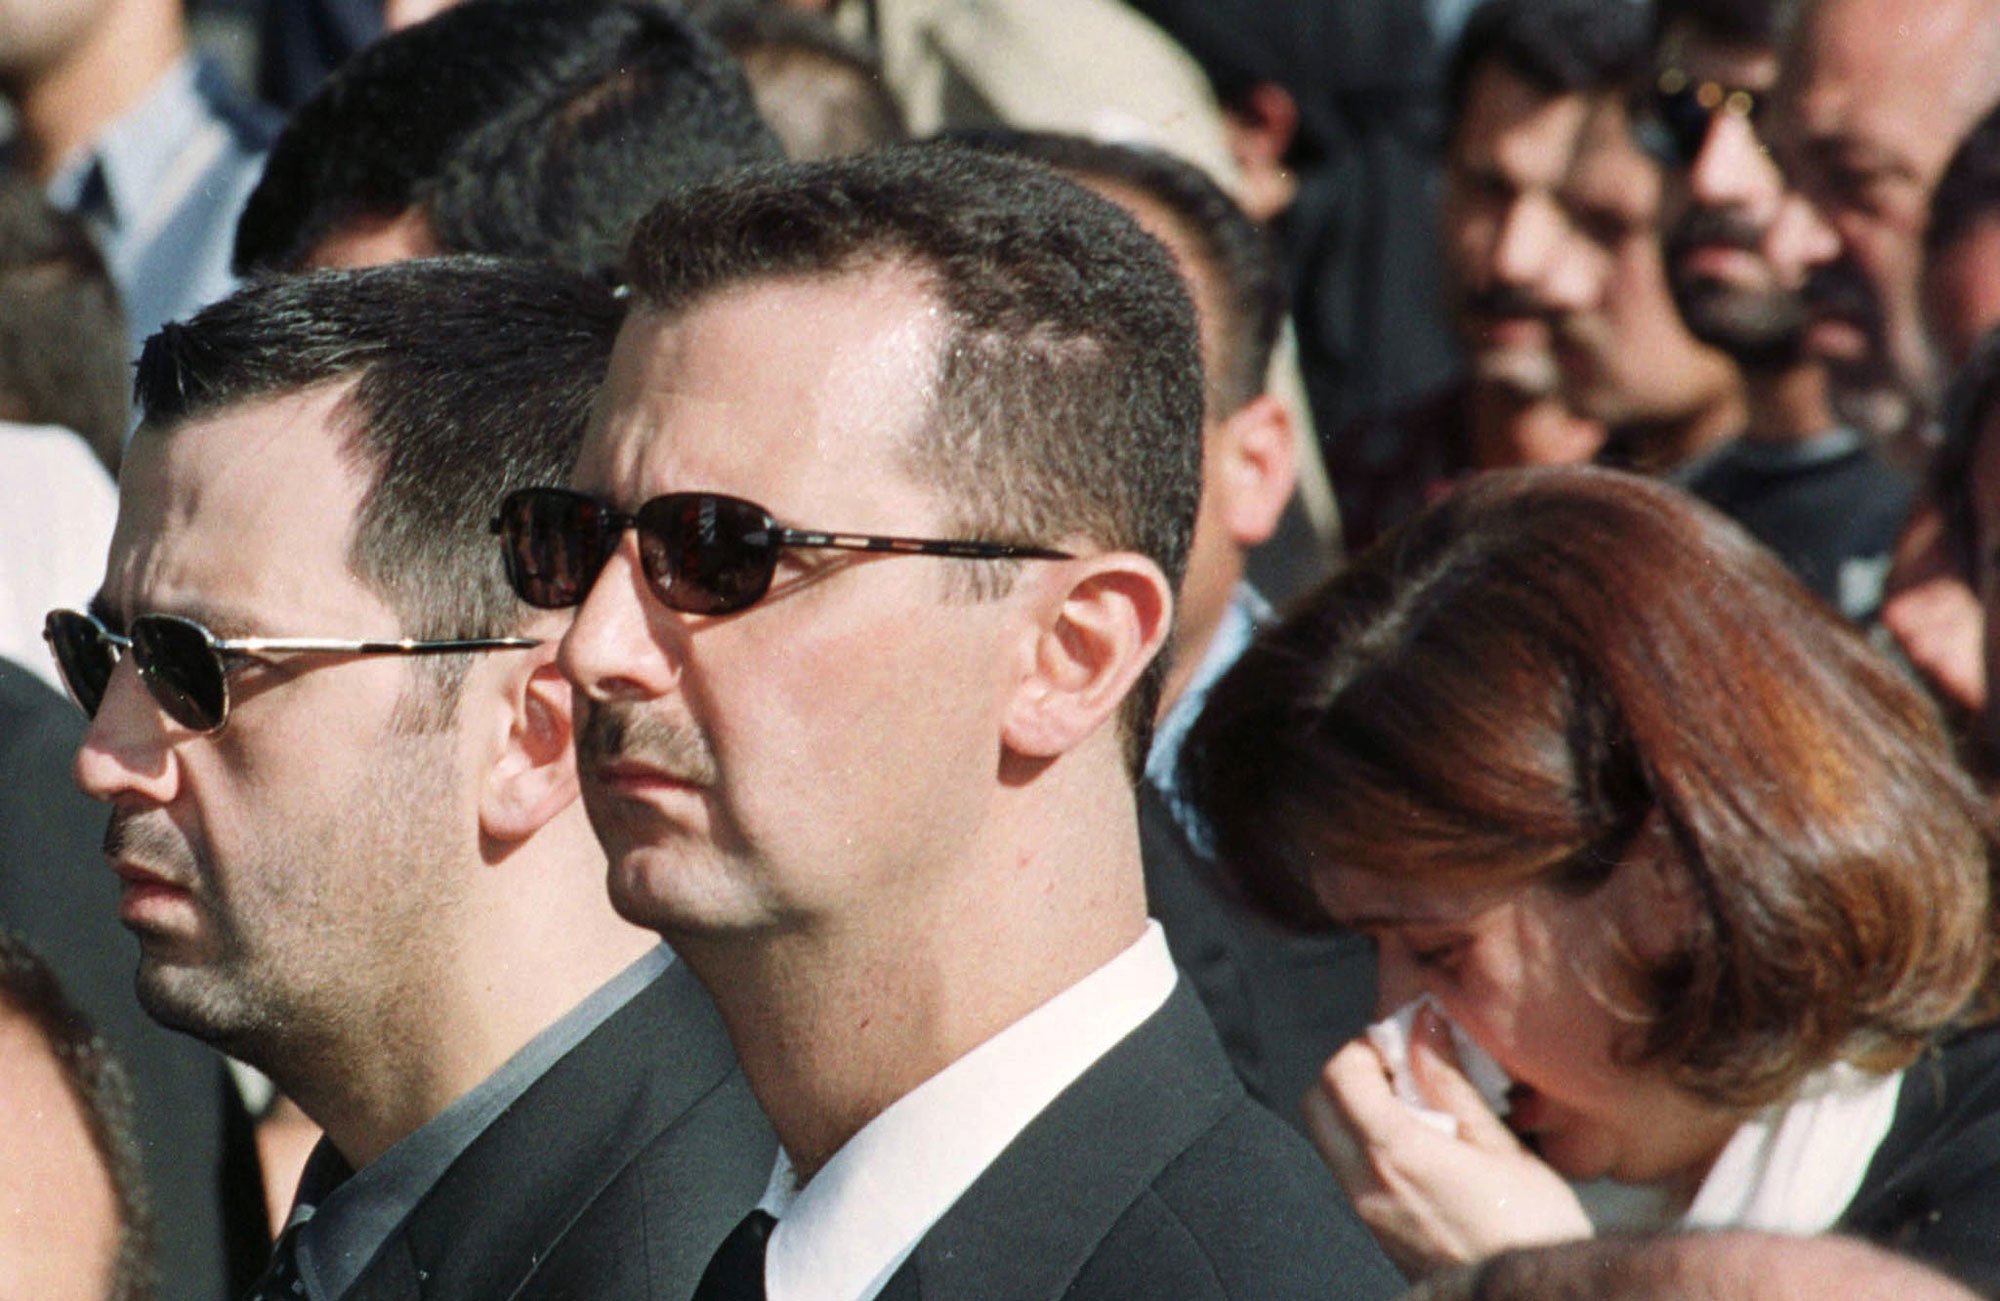 Maher (links) en Bashar al-Assad in 2000 tijdens de begrafenis van hun vader Hafez, Reuters